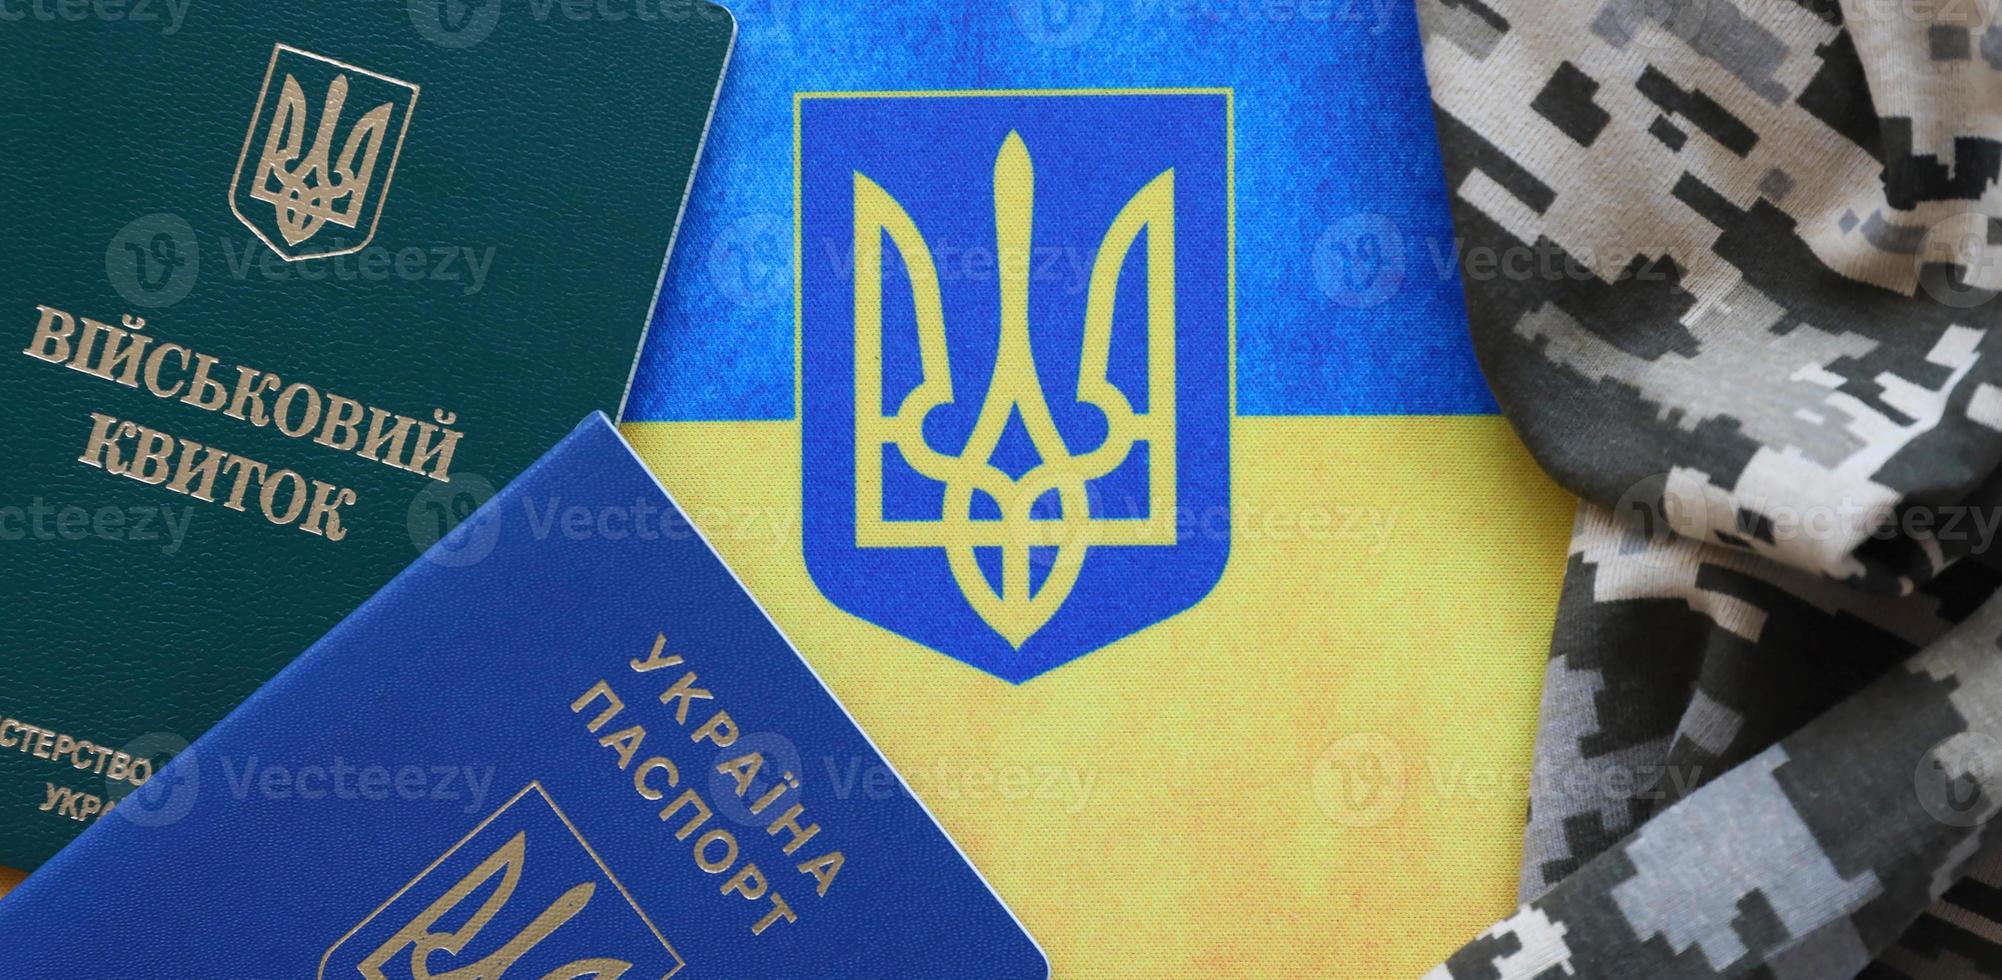 ukrainischer militärausweis und ausländischer pass auf stoff mit textur aus pixeliger tarnung. Stoff mit Tarnmuster in grauen, braunen und grünen Formen mit persönlichem Token und Reisepass der ukrainischen Armee. foto